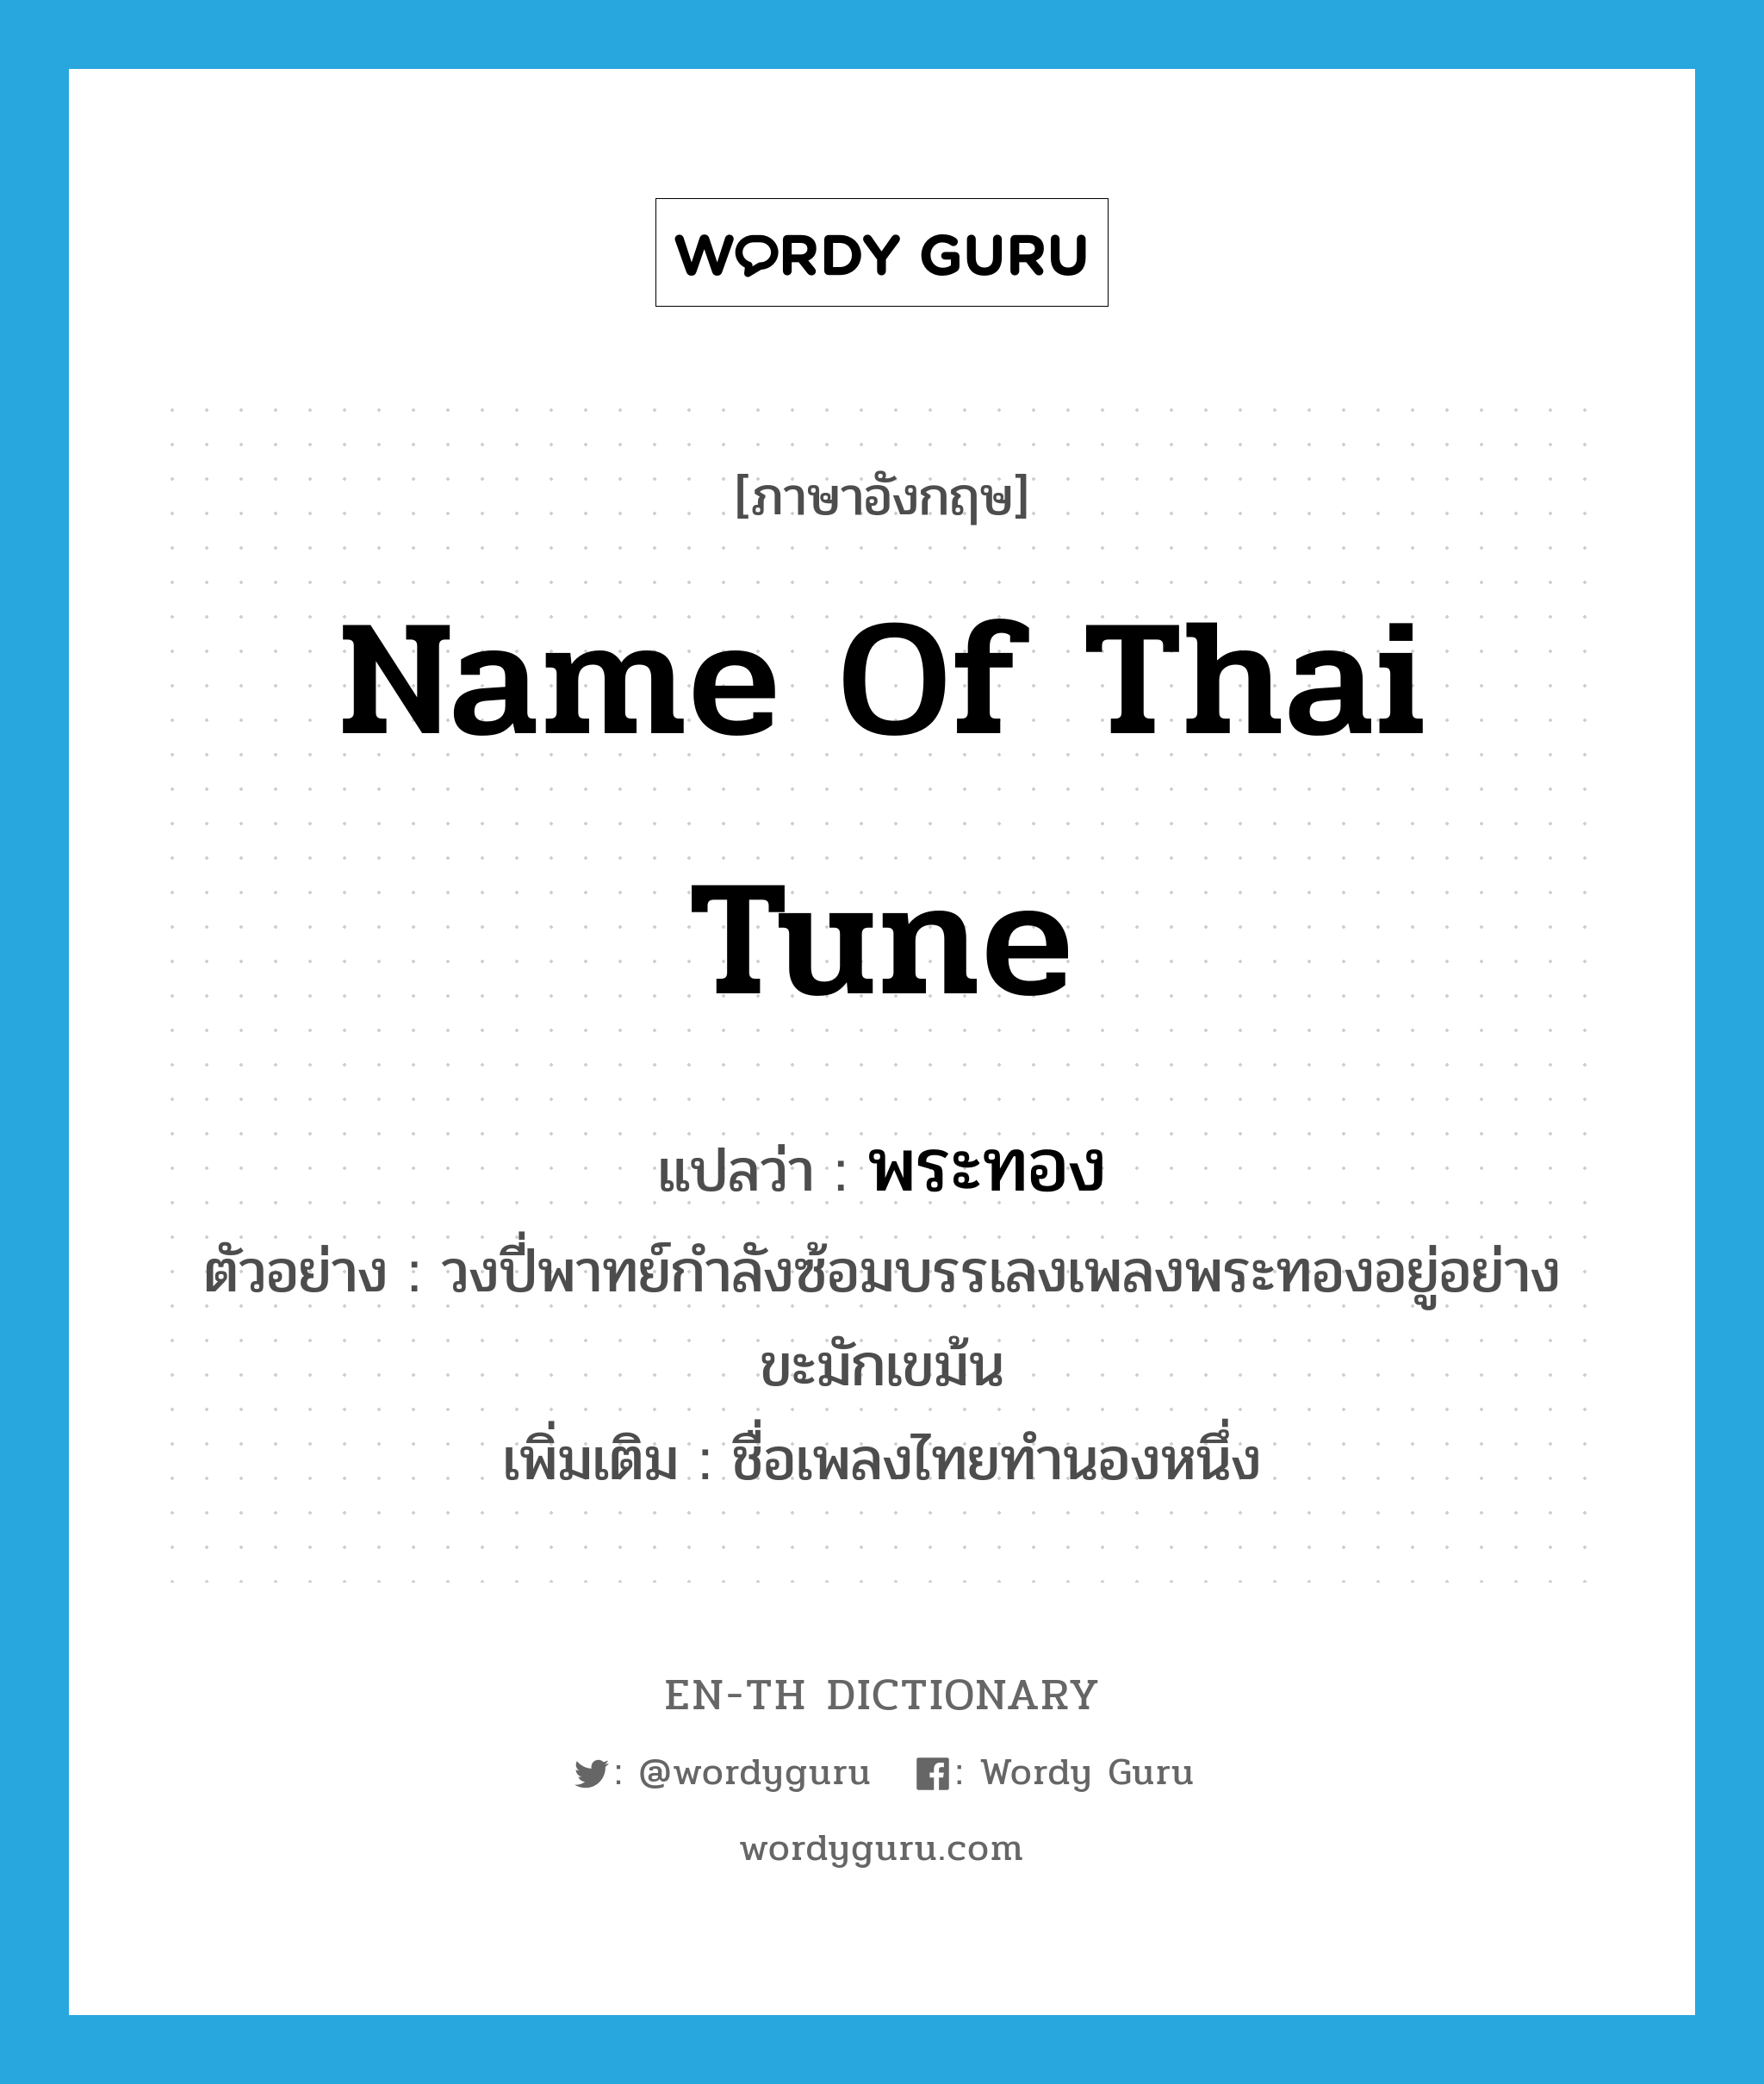 name of Thai tune แปลว่า?, คำศัพท์ภาษาอังกฤษ name of thai tune แปลว่า พระทอง ประเภท N ตัวอย่าง วงปี่พาทย์กำลังซ้อมบรรเลงเพลงพระทองอยู่อย่างขะมักเขม้น เพิ่มเติม ชื่อเพลงไทยทำนองหนึ่ง หมวด N